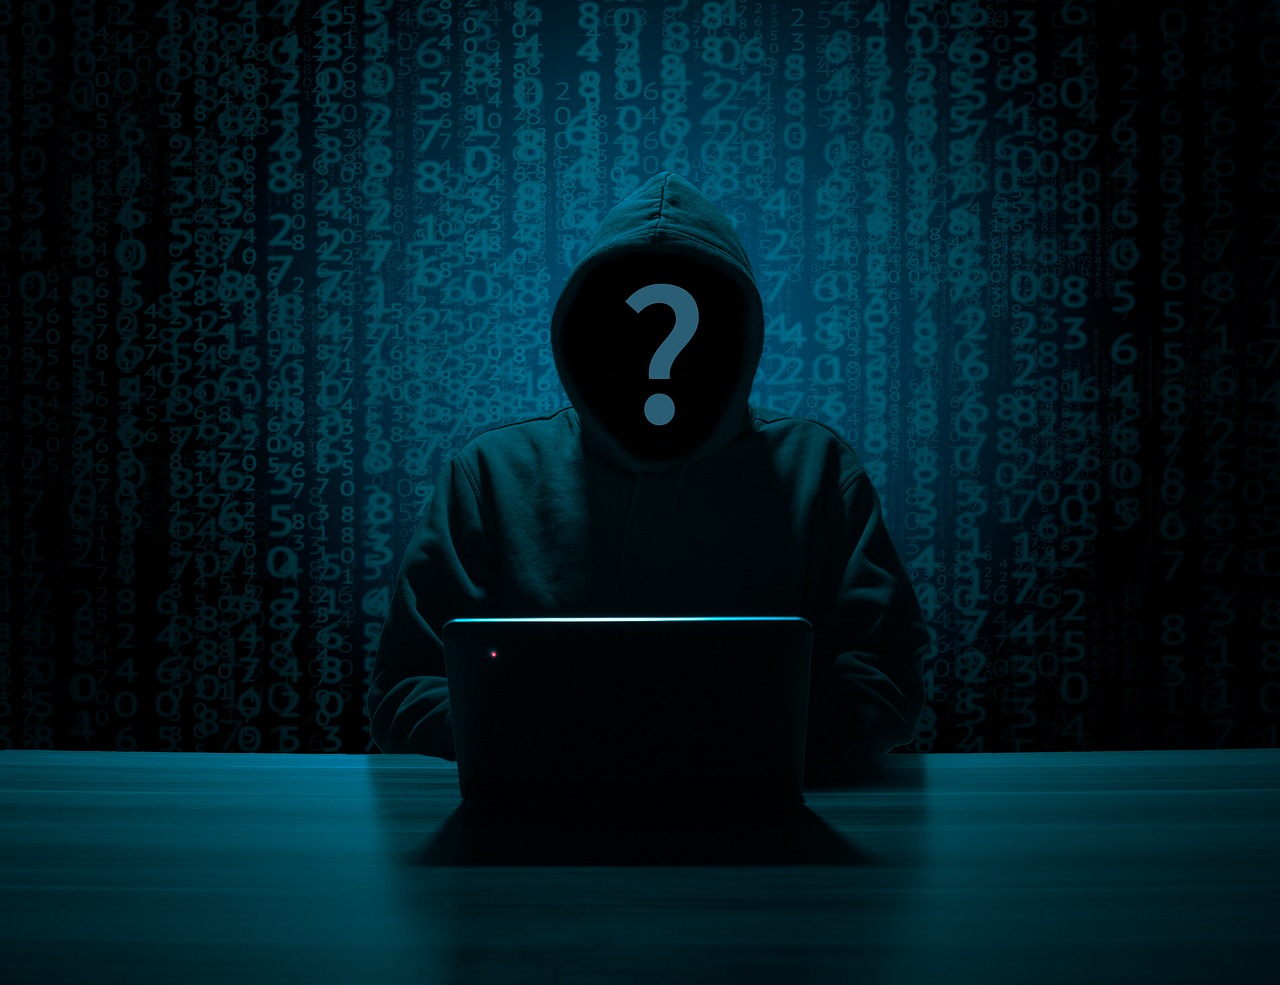 20 milliárd váltságdíjat követeltek a hackerek az áldozattól - E-volution